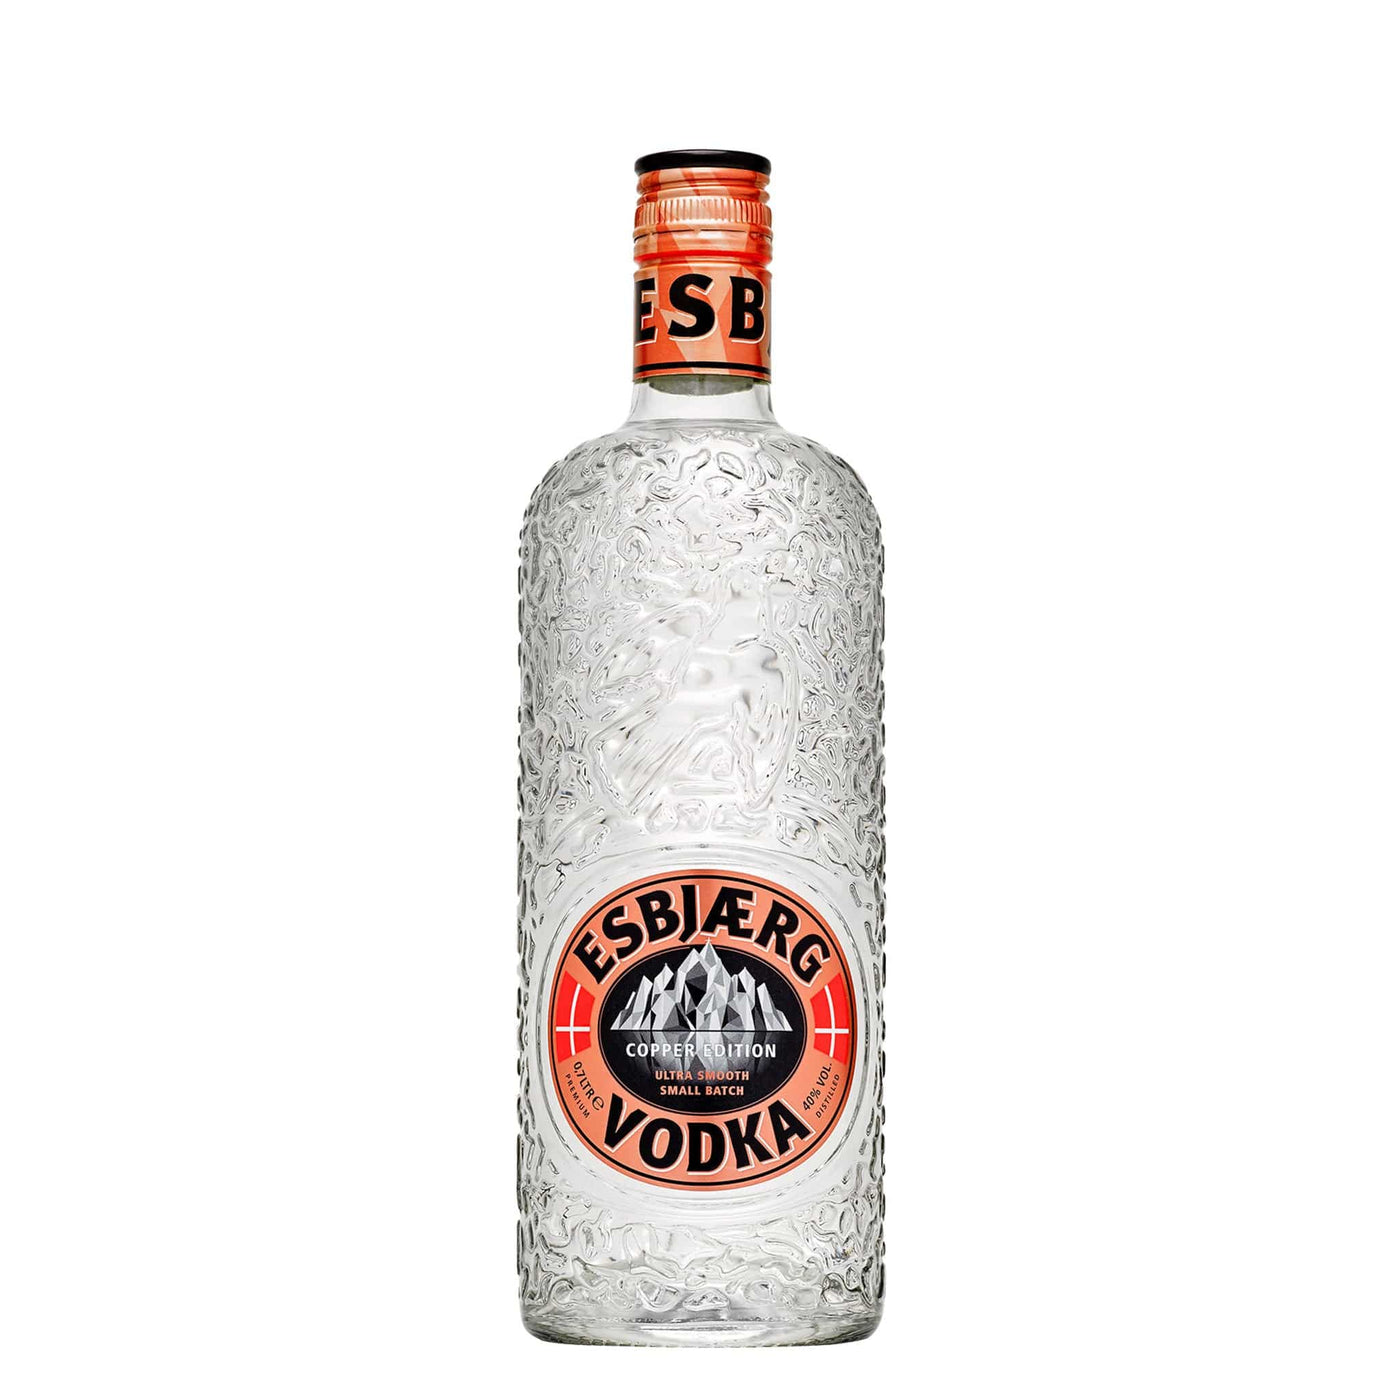 Esbjaerg Copper Vodka - Spiritly